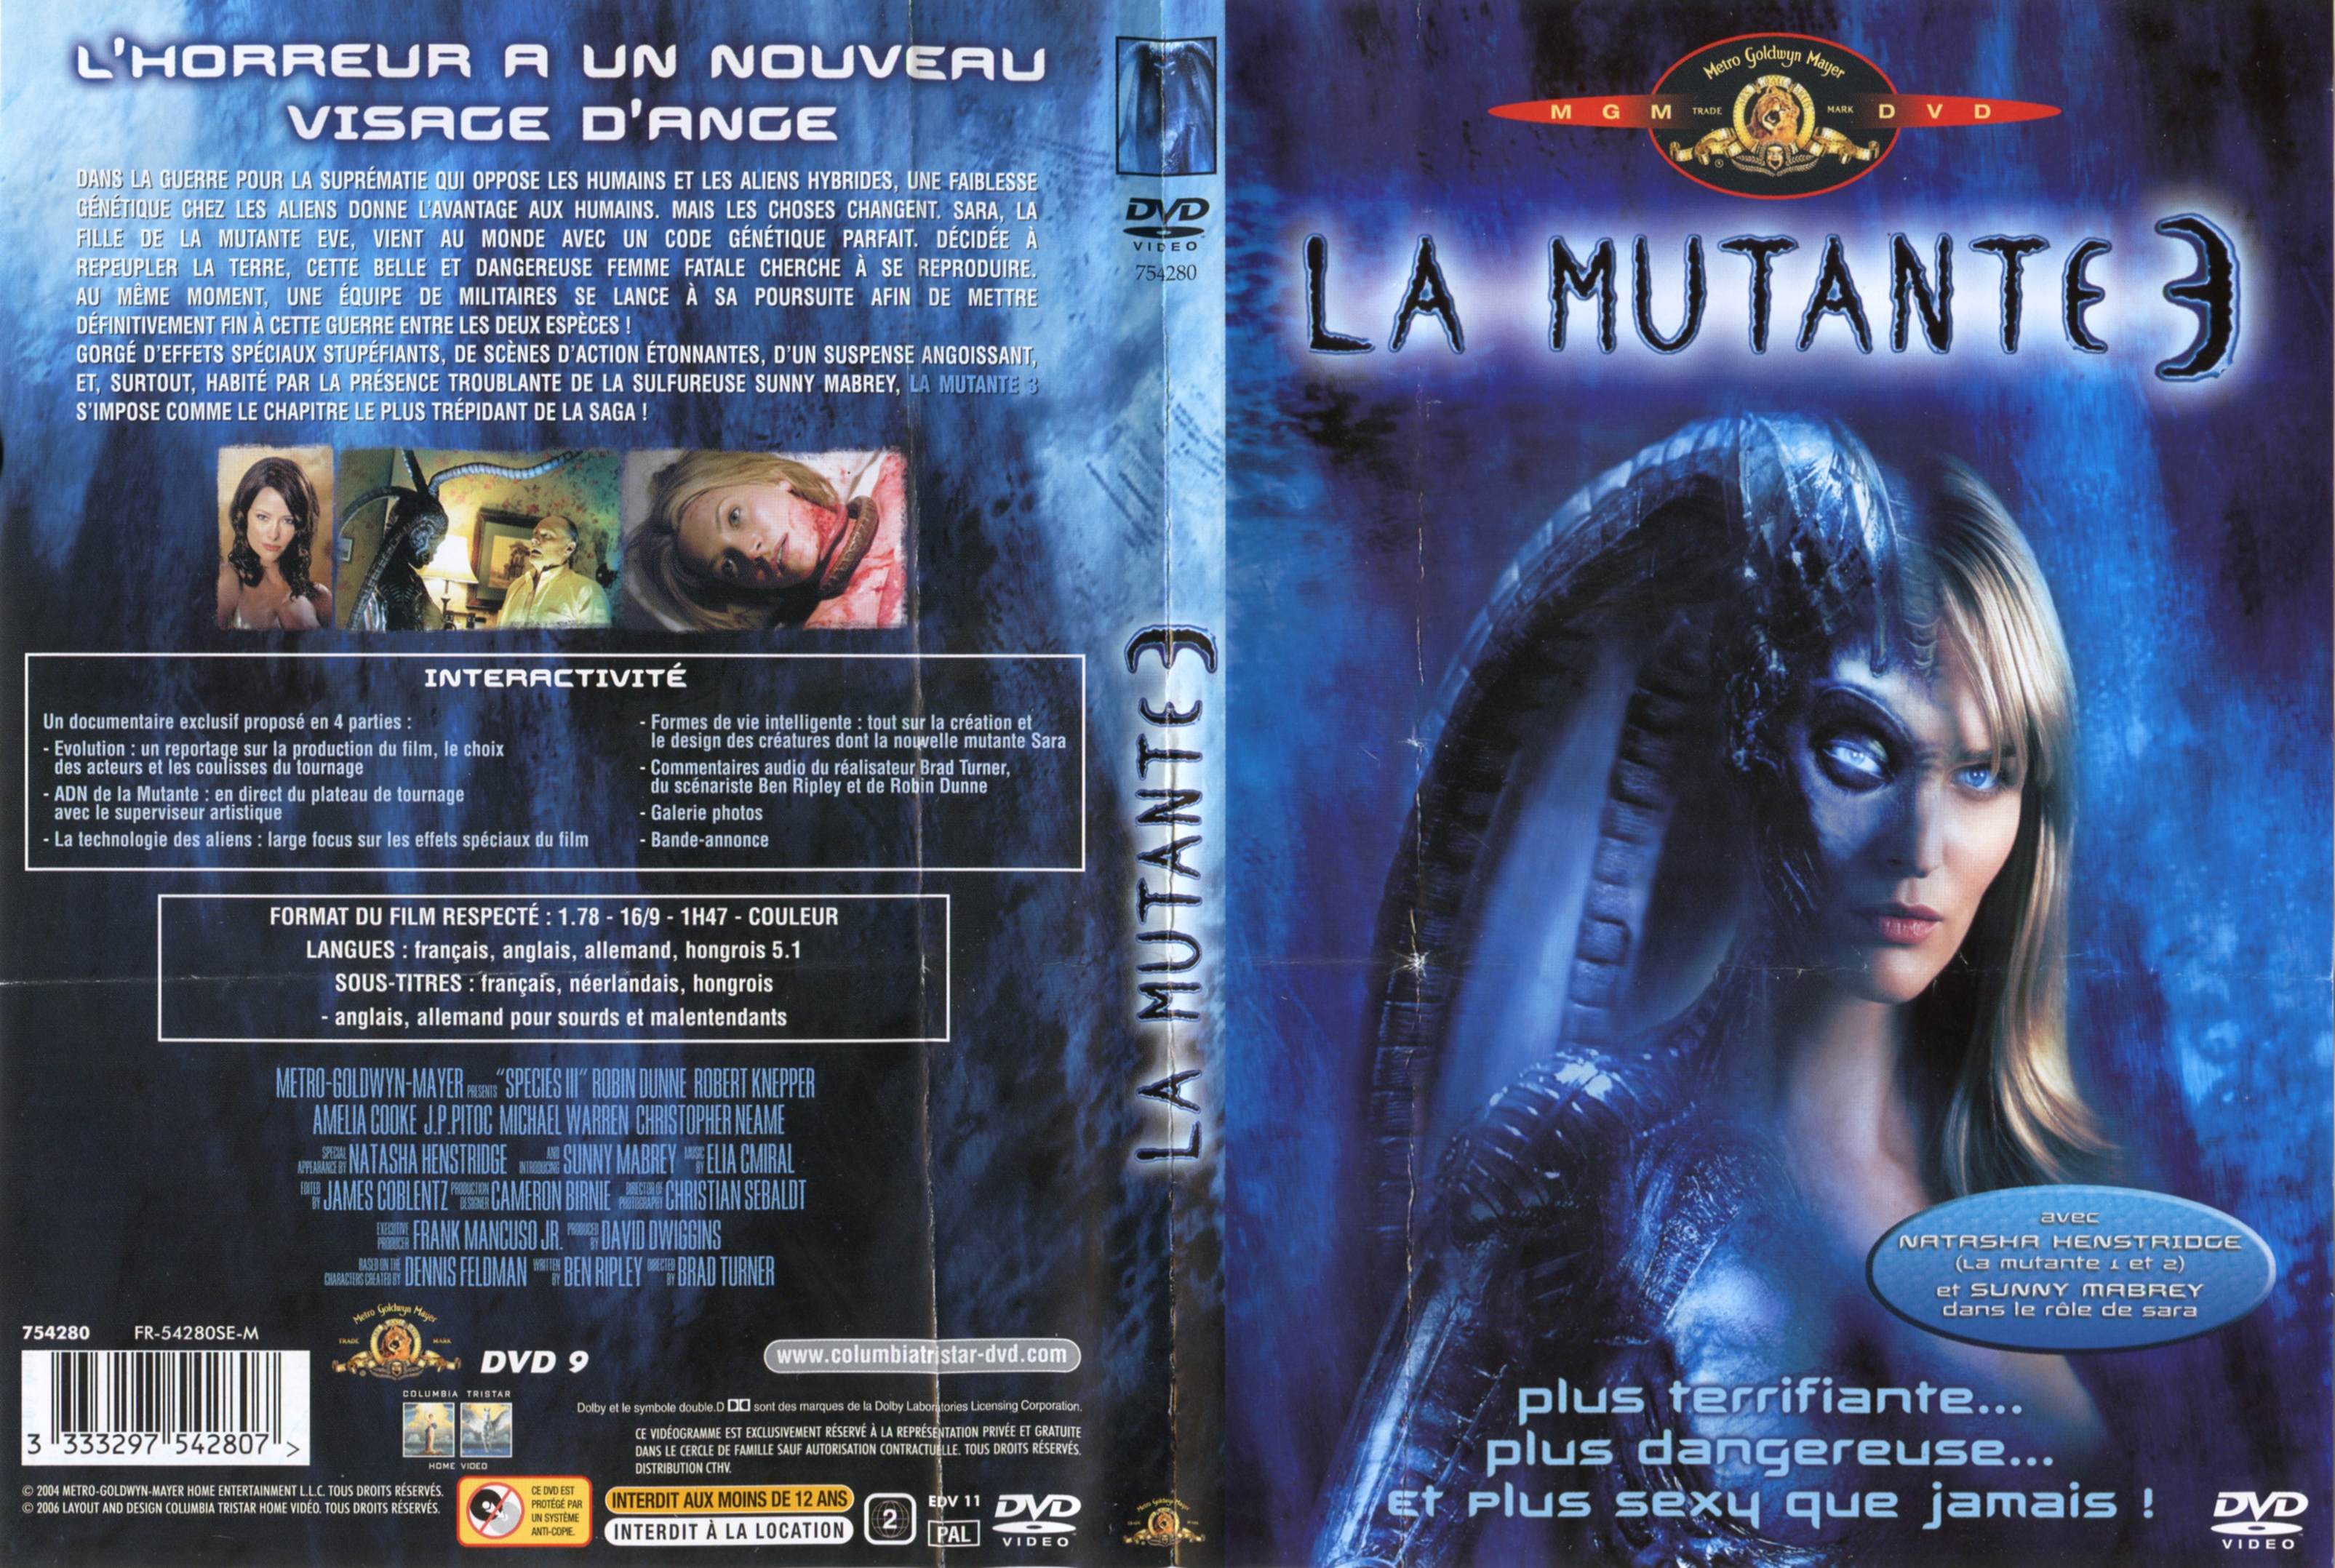 Jaquette DVD La mutante 3 v2